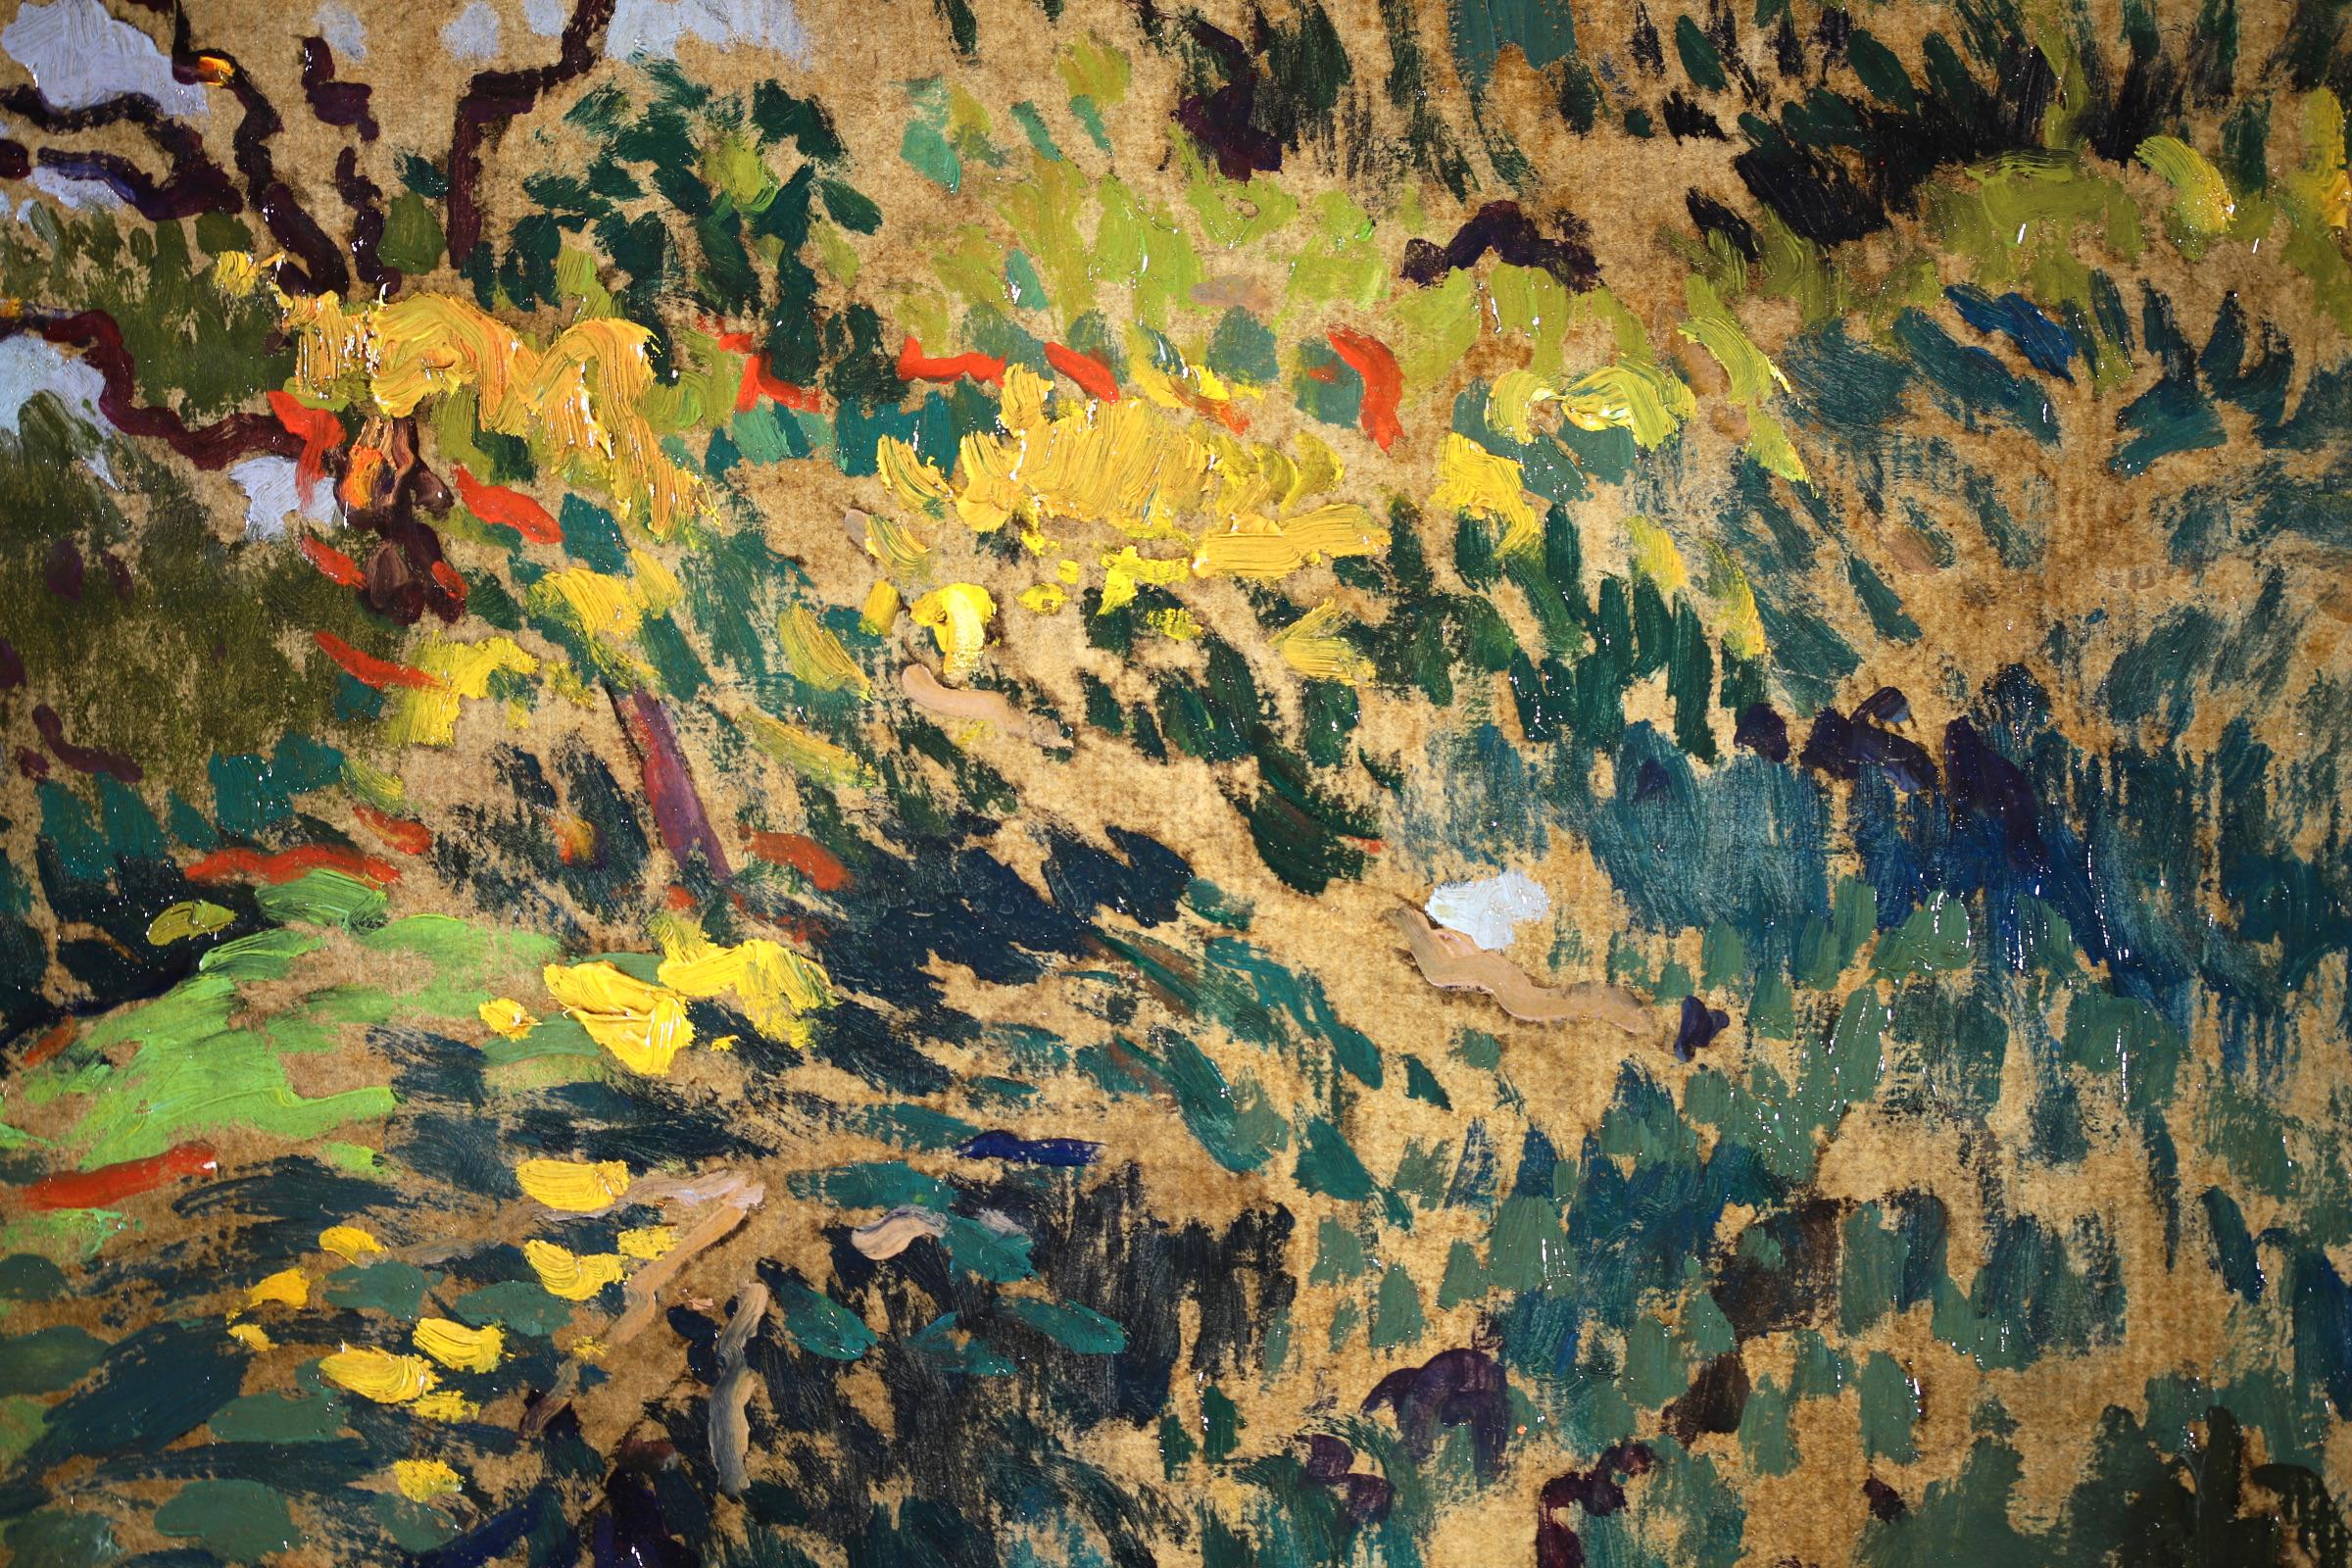 Signierte postimpressionistische Landschaft Öl auf Karton circa 1914 von Französisch Maler Paul Elie Gernez. Das Werk stellt Figuren dar, die im Schatten von Bäumen in einem Wald spazieren gehen. Dieses in Grün-, Blau- und Gelbtönen gehaltene